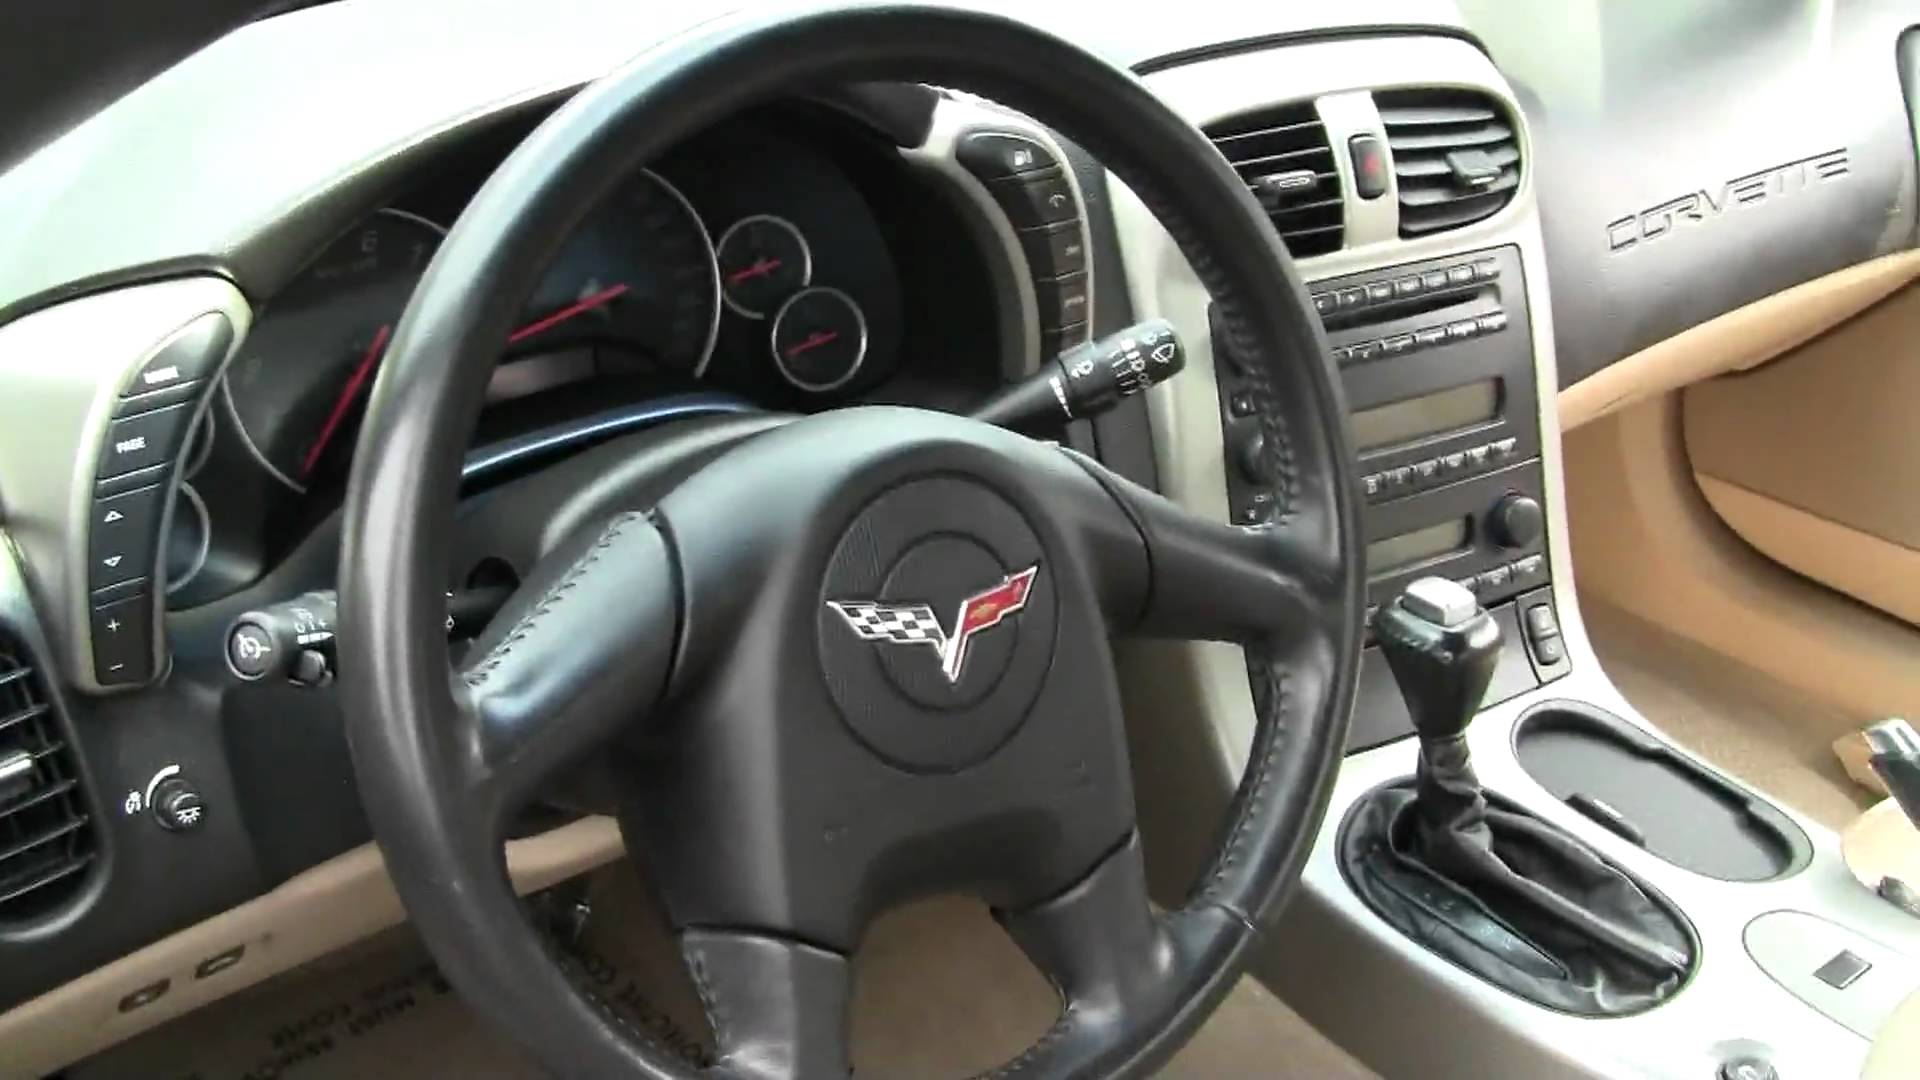 2005 Corvette Interior